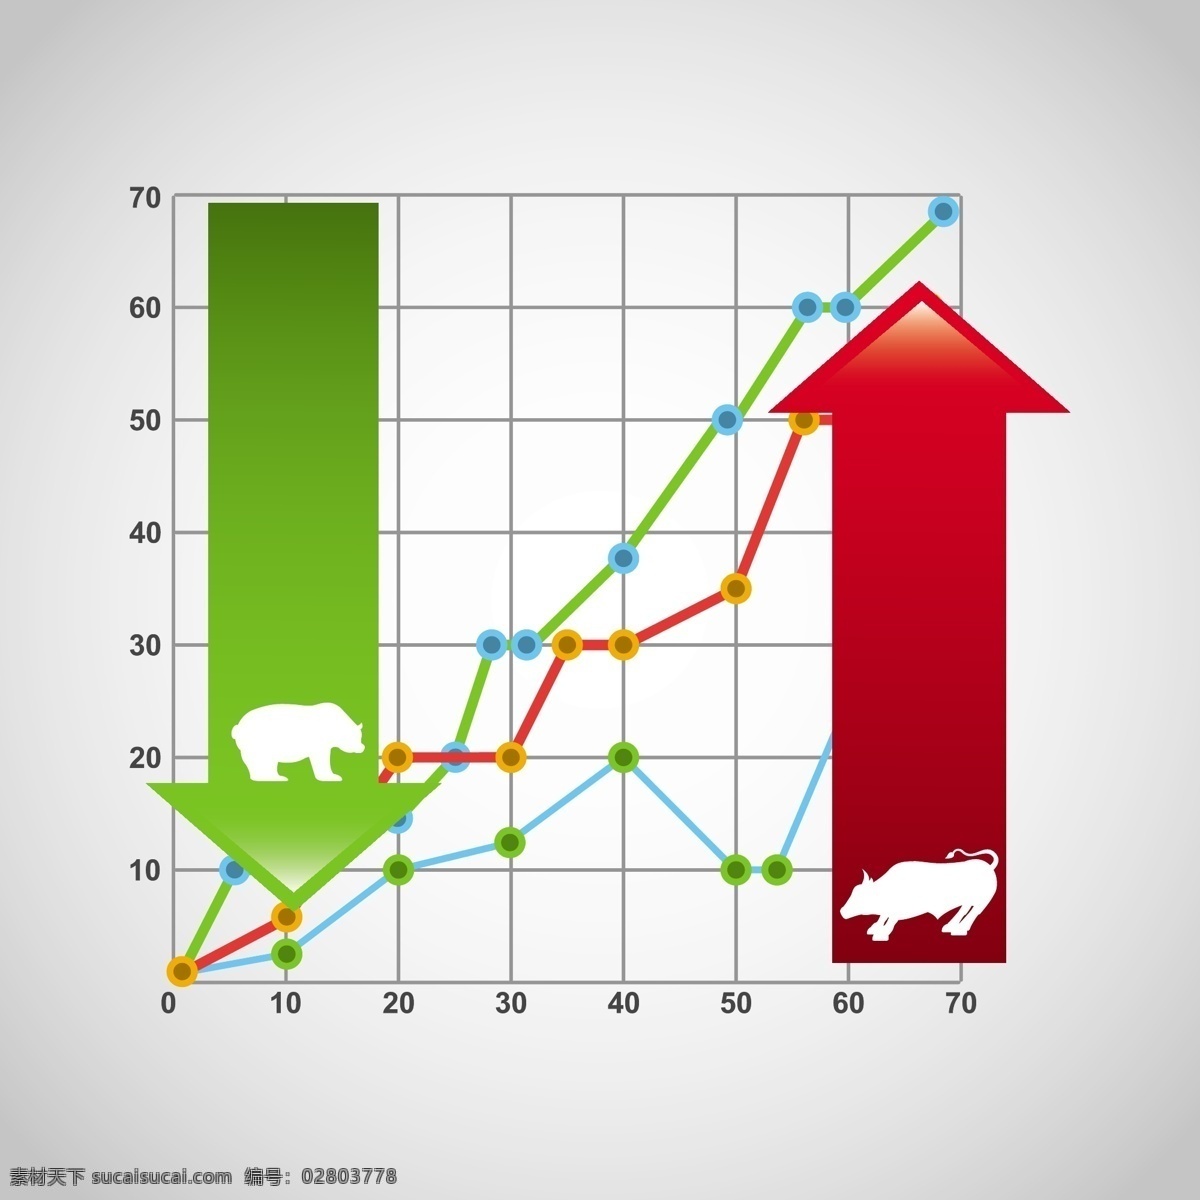 股市 股票 上升 下降 箭头 曲线 图表 牛市 熊市 矢量 商务金融 金融货币